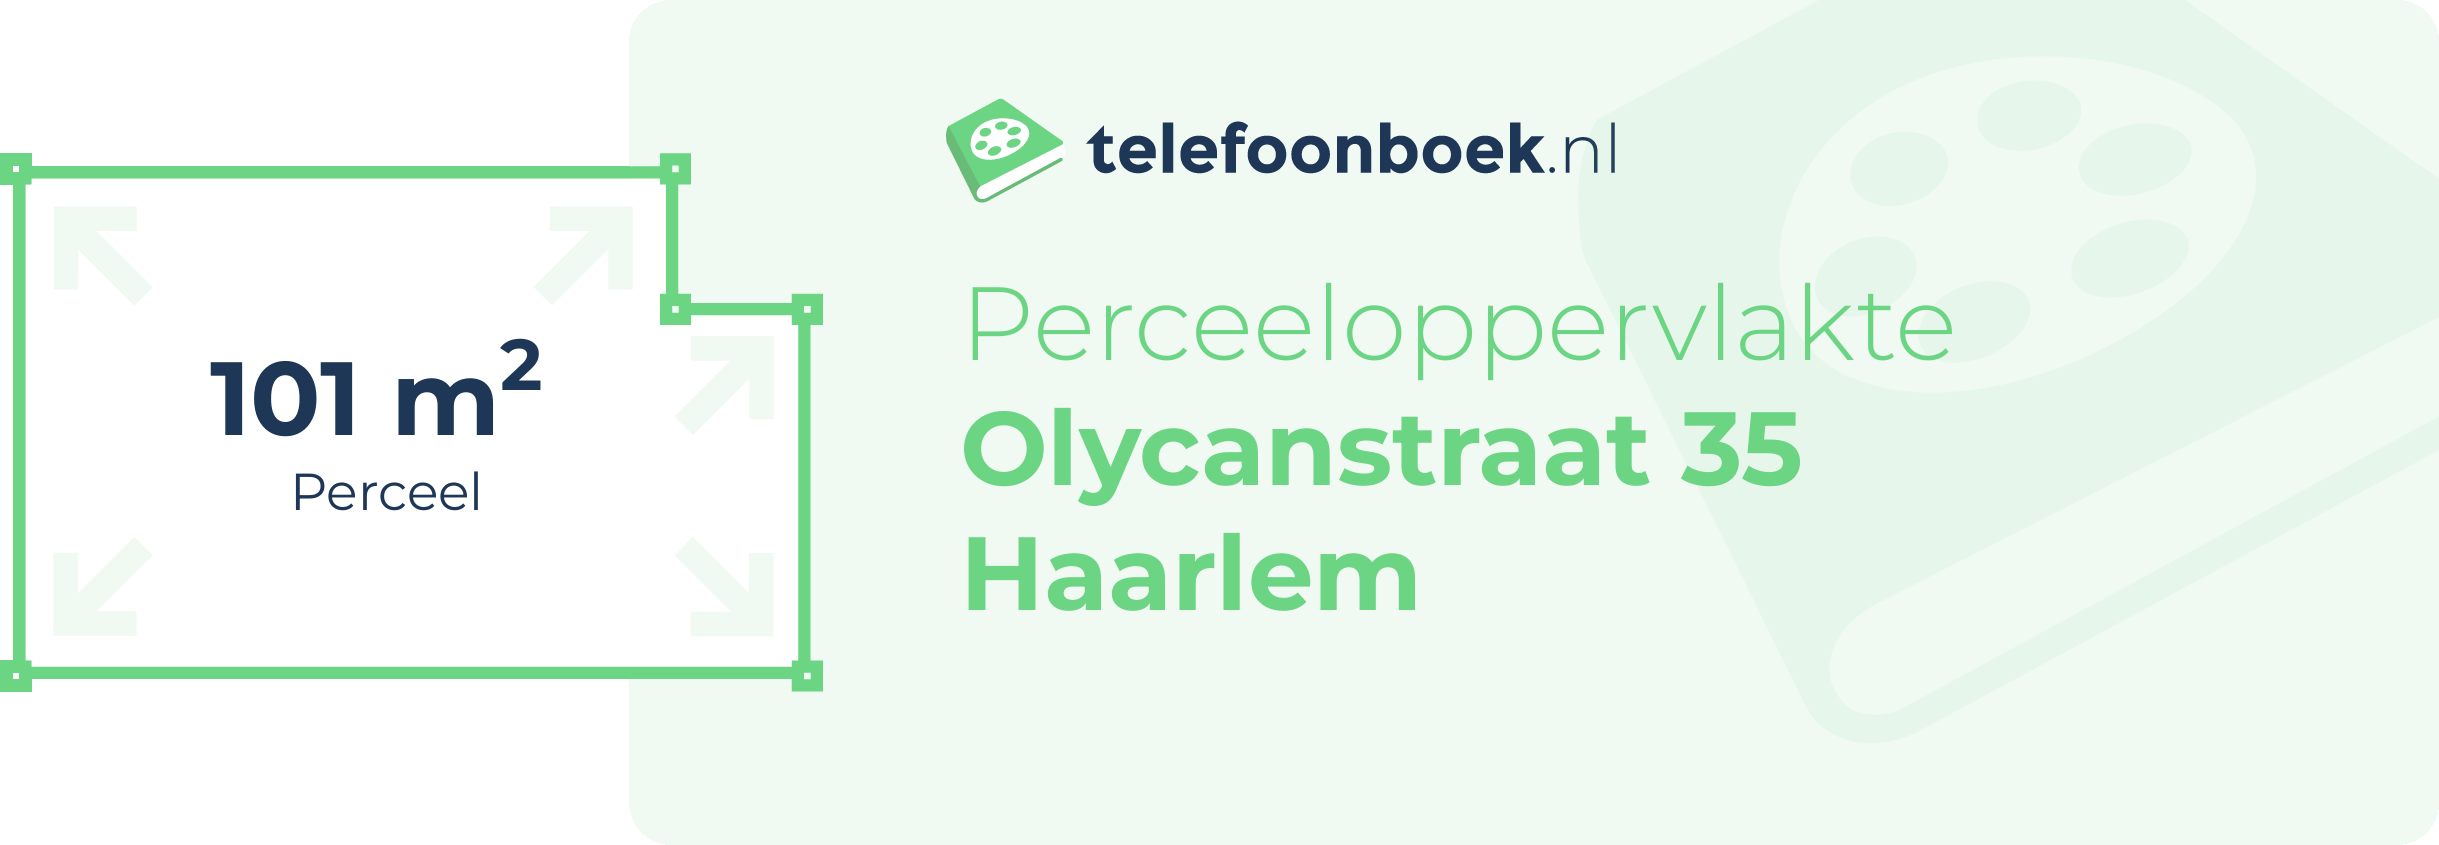 Perceeloppervlakte Olycanstraat 35 Haarlem